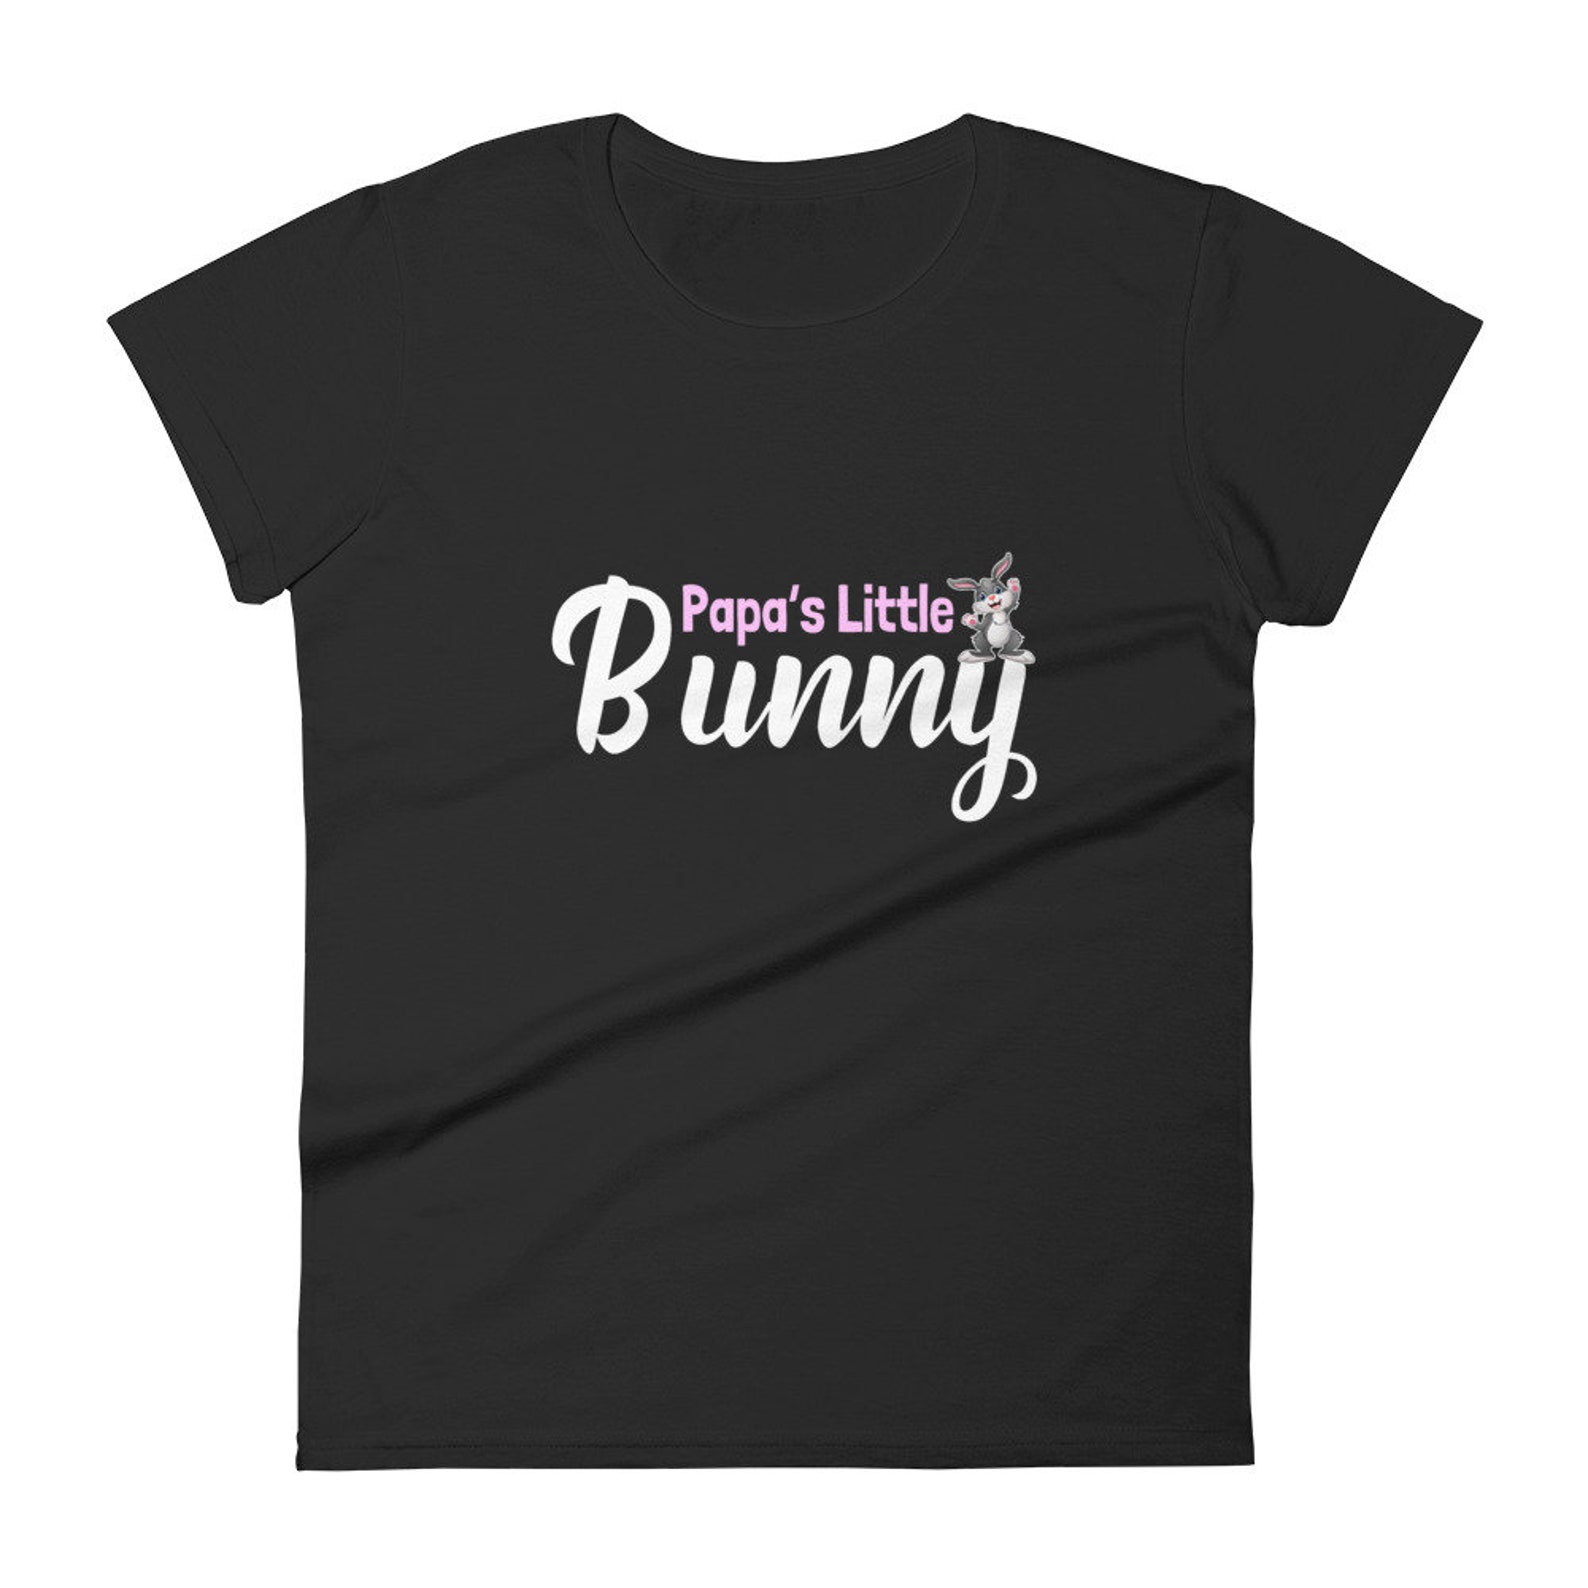 Pappas Little Bunny Shirt Cute Rabbit Ddlg Tshirt Daddy Dom | Etsy